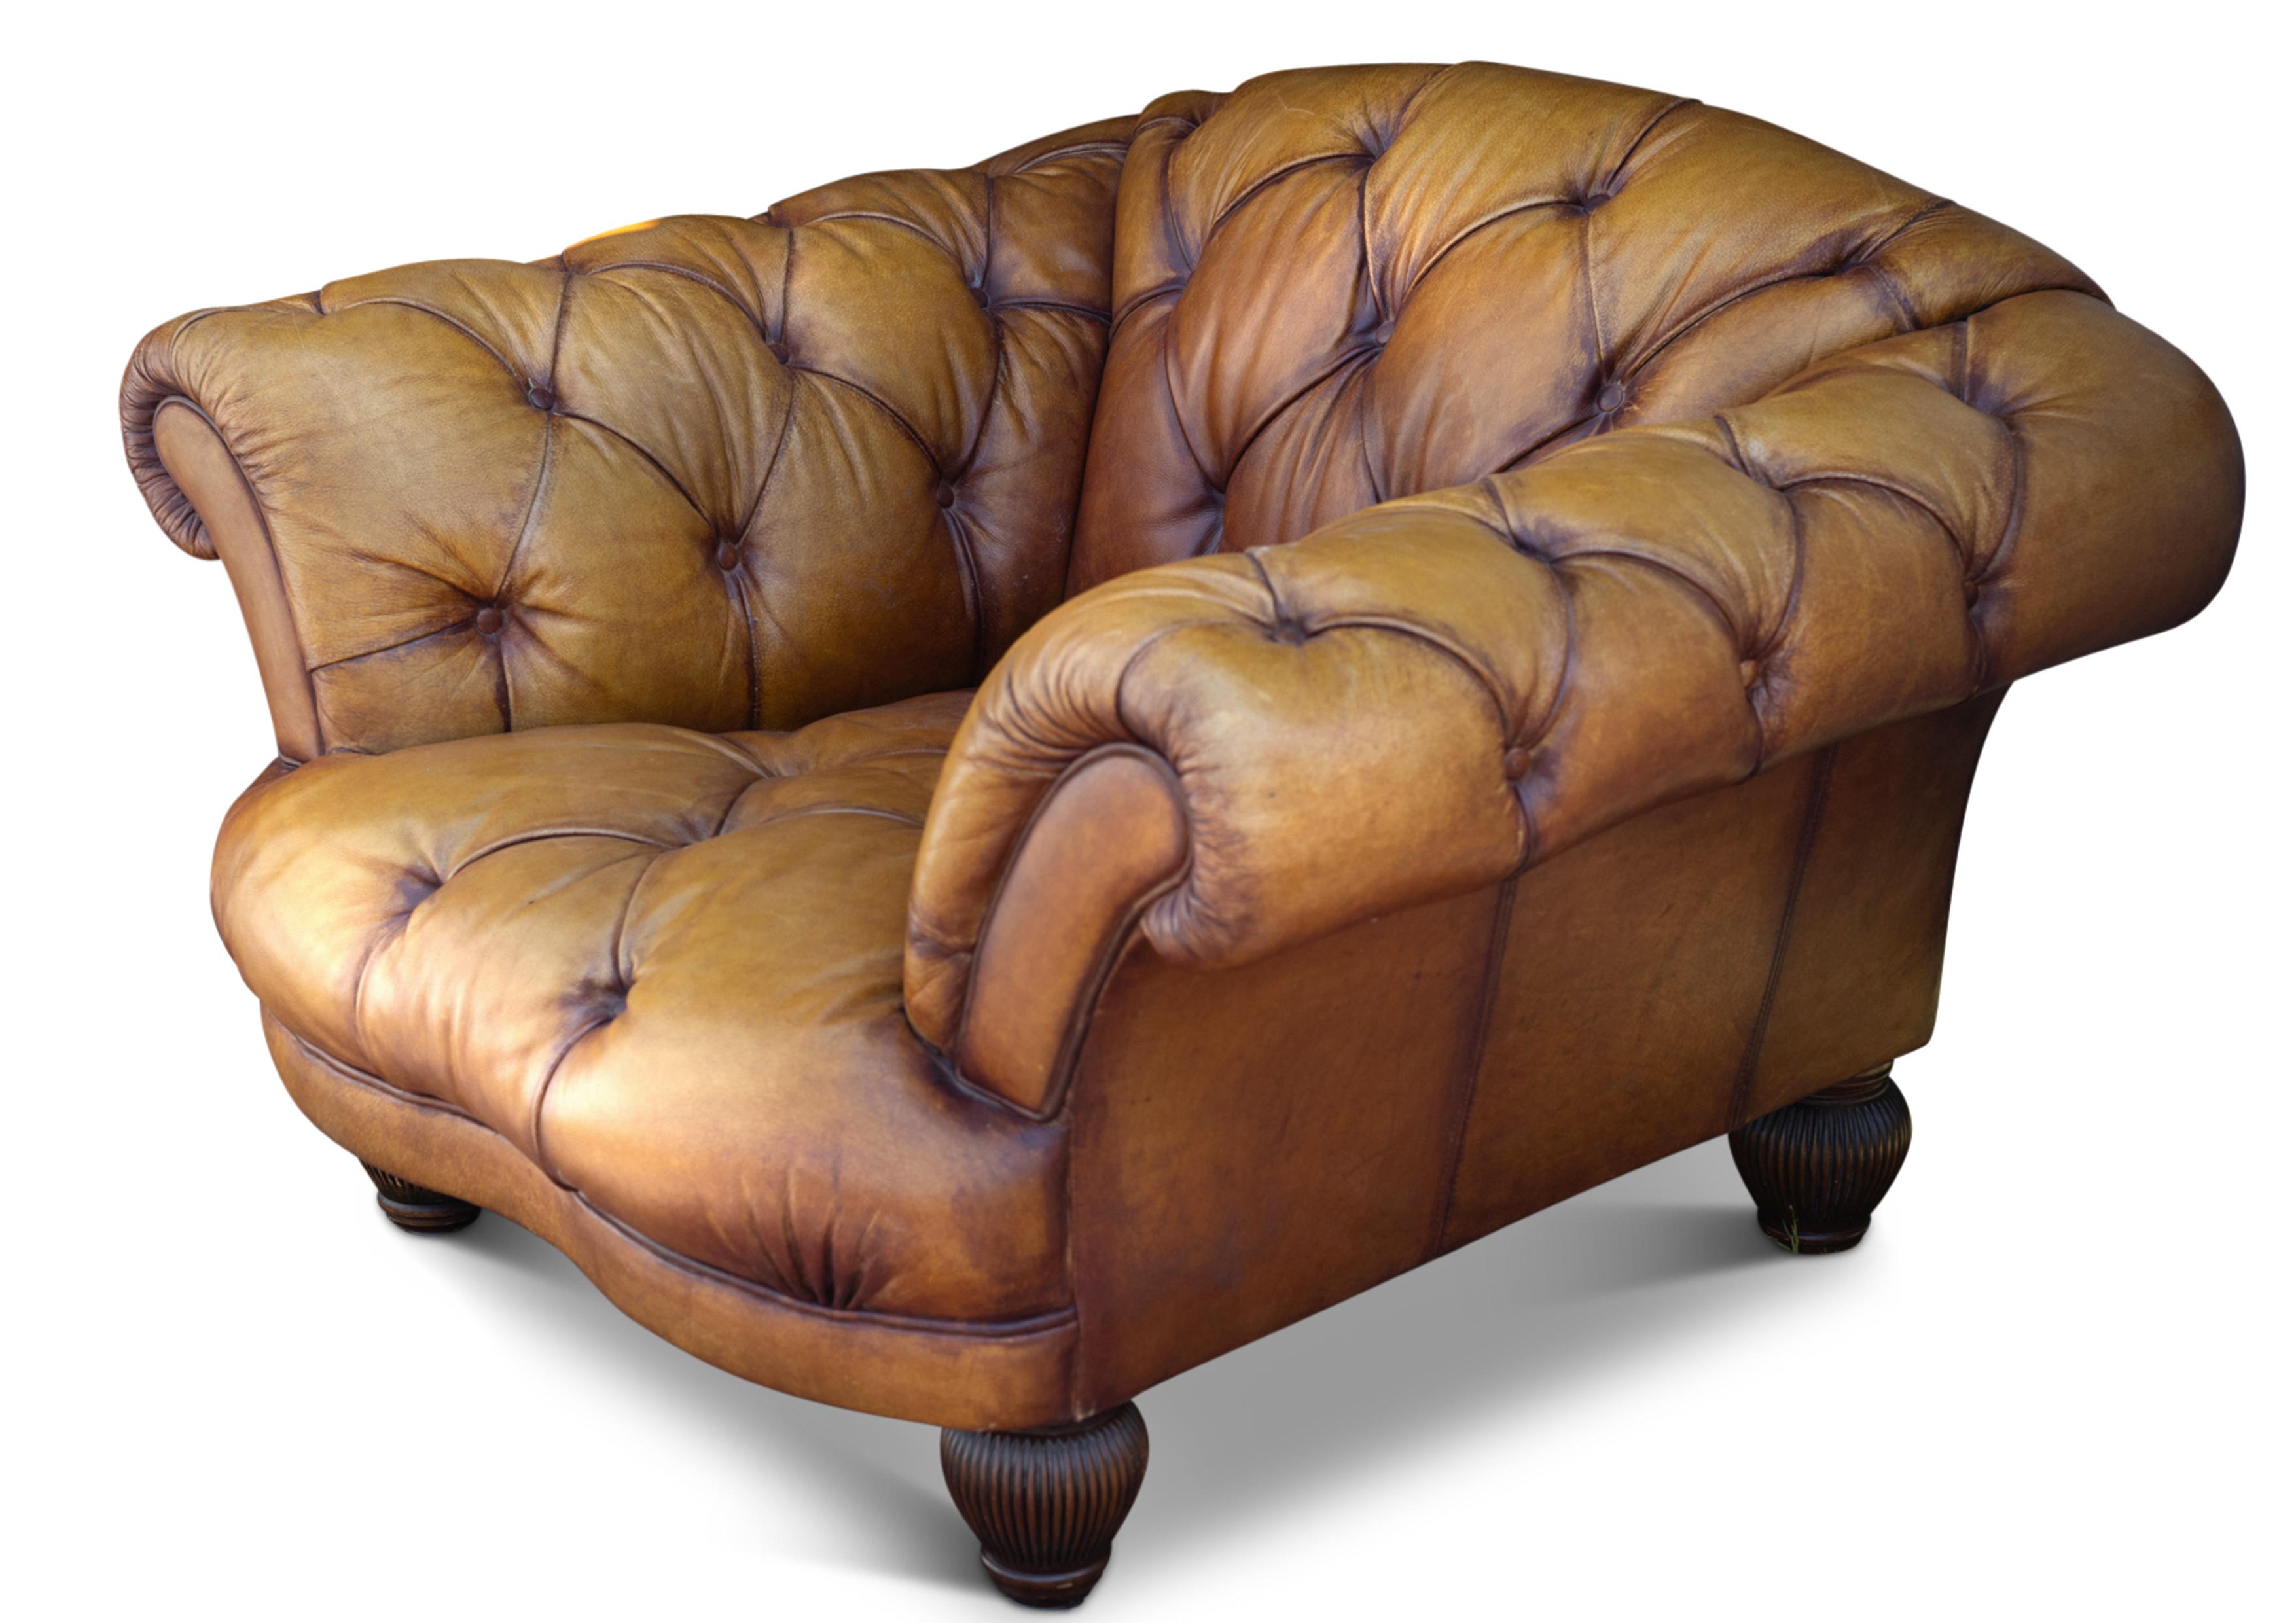 Viktorianischer Grand Tour Design Tan Buffalo Hide Leder Deep Button Chesterfield Club Chair mit passendem Chesterfield Footstool 

Handgefertigt in England  mit hochwertigem Massivholzrahmen, der sich durch höchste Haltbarkeit und Festigkeit